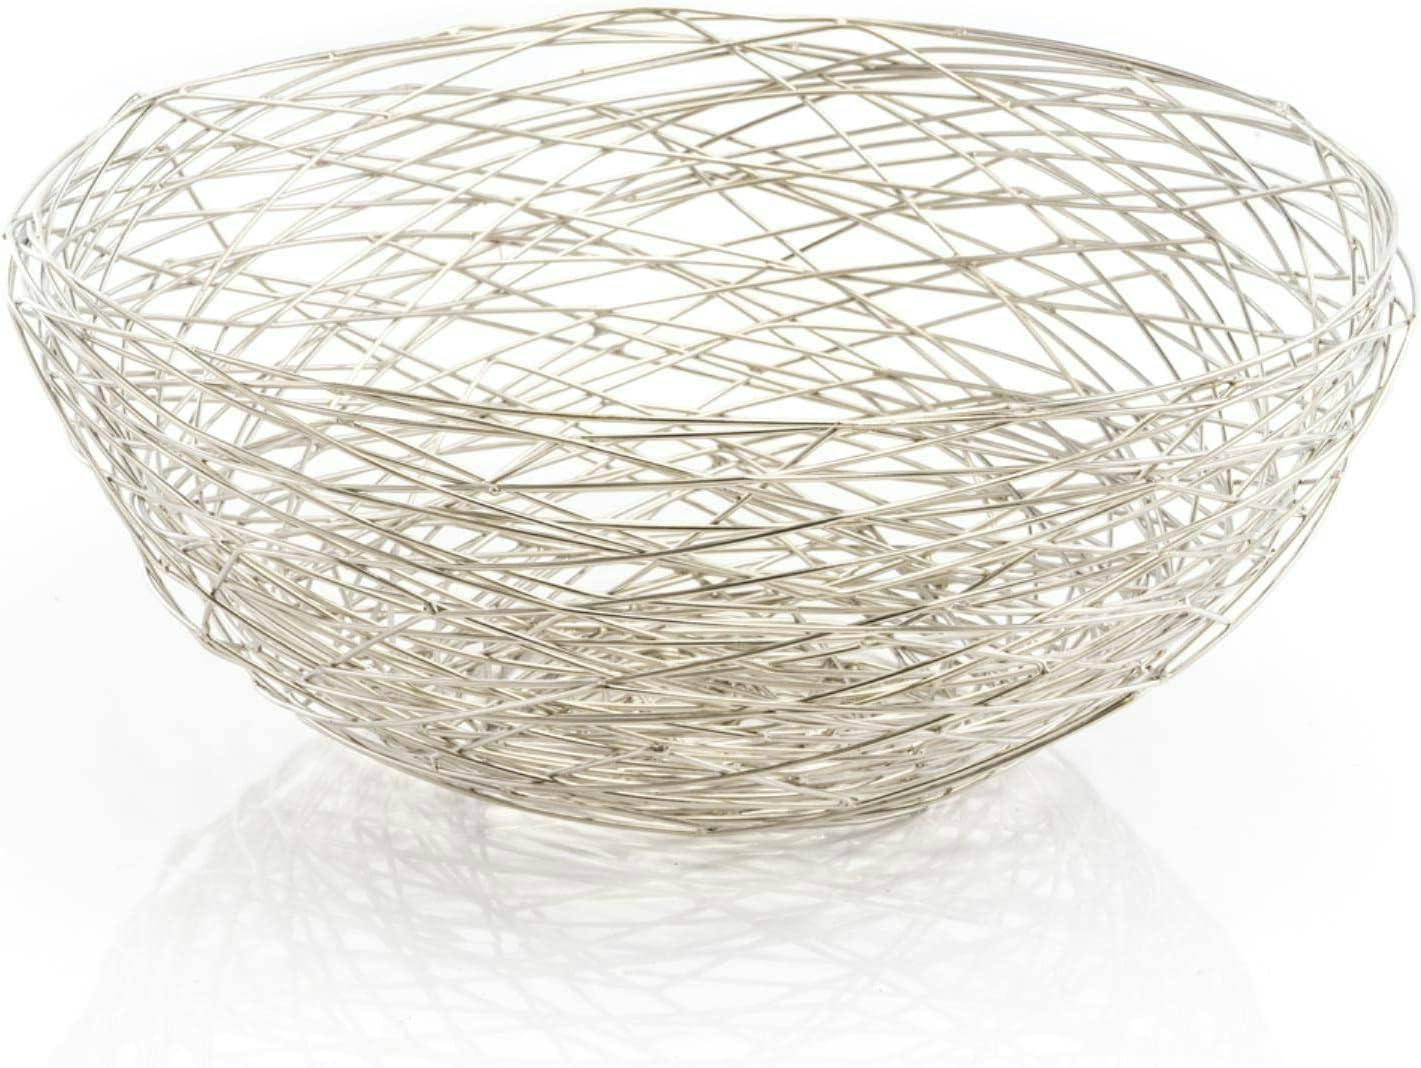 Elegant Silver Iron Wire 12oz Round Fruit Bowl